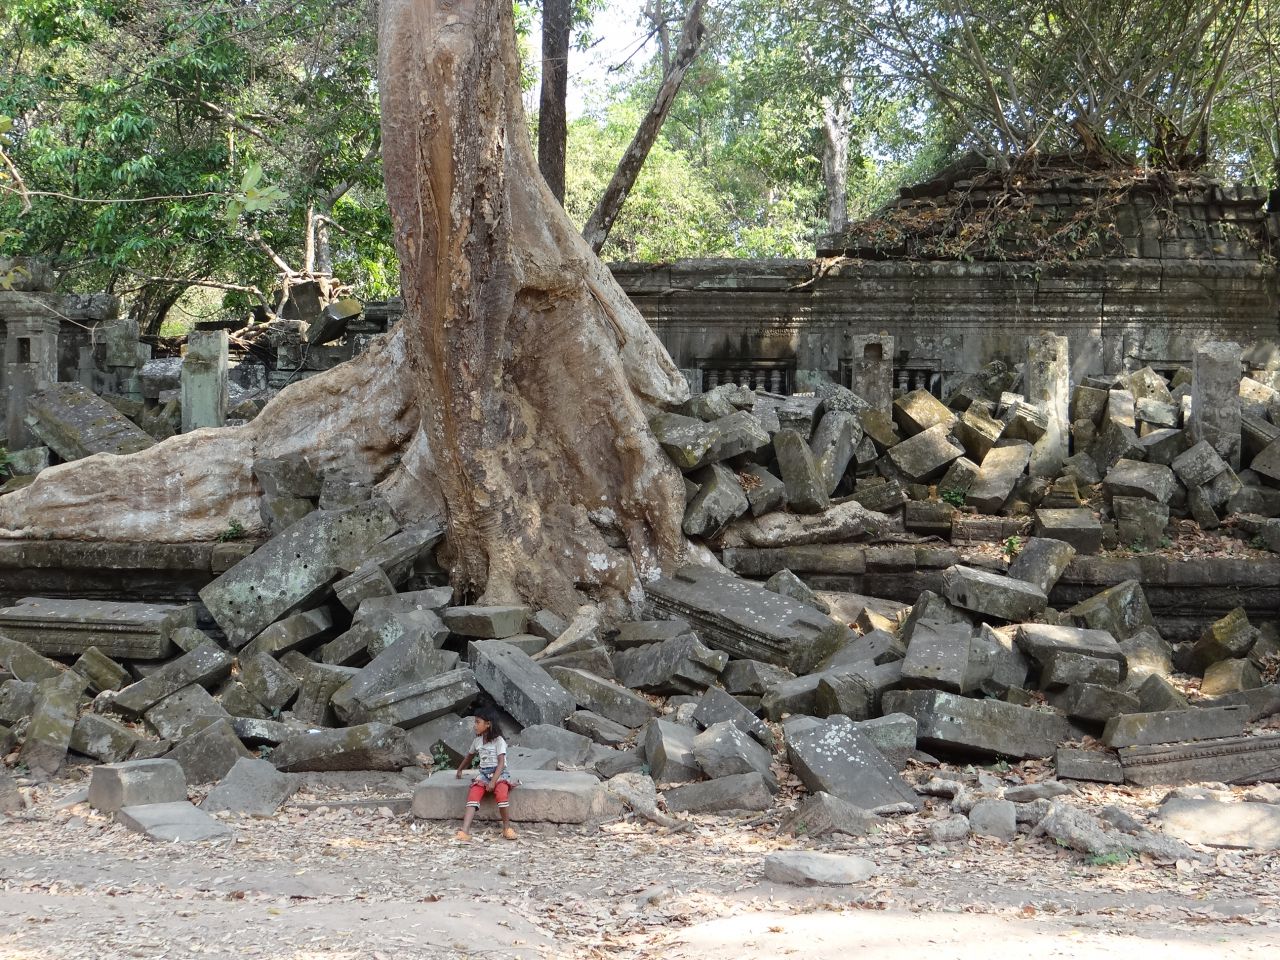 Храм зарос джунглями, но в последние годы его местами слегка расчистили от особенно густой растительности. Комплекс окружен огромным оборонительным рвом, образовавшим «островок» длиной в 1,2 километра и шириной в 900 метров. - Камбоджа, Лаос. Февраль 2014. Часть 3.